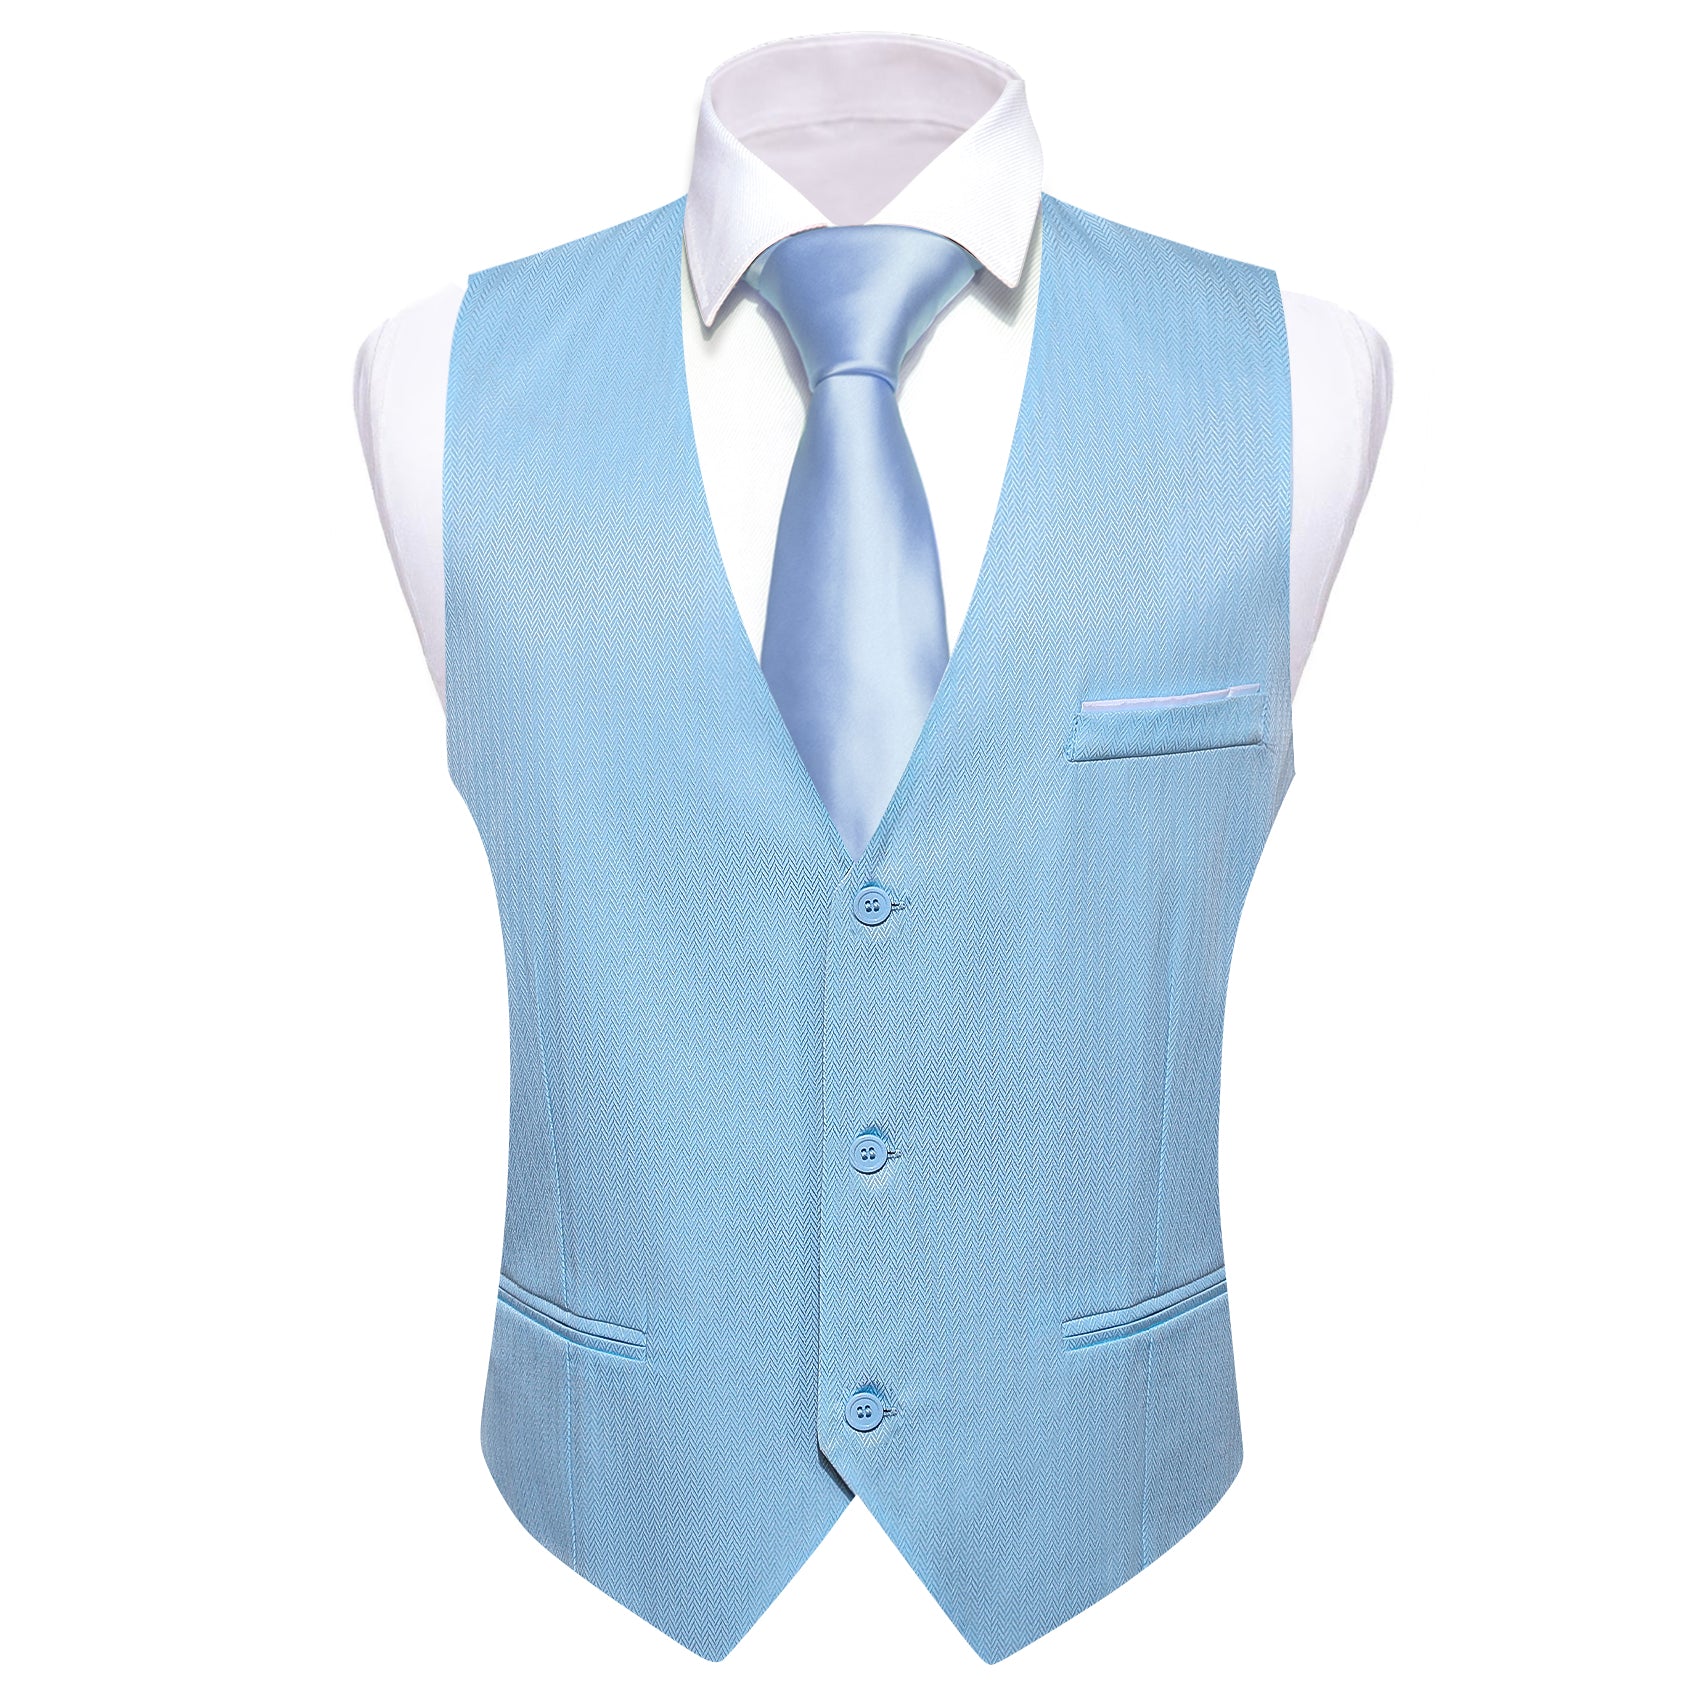 Barry.wang Men's Vest Light Blue Solid Silk Vest Suit for Business